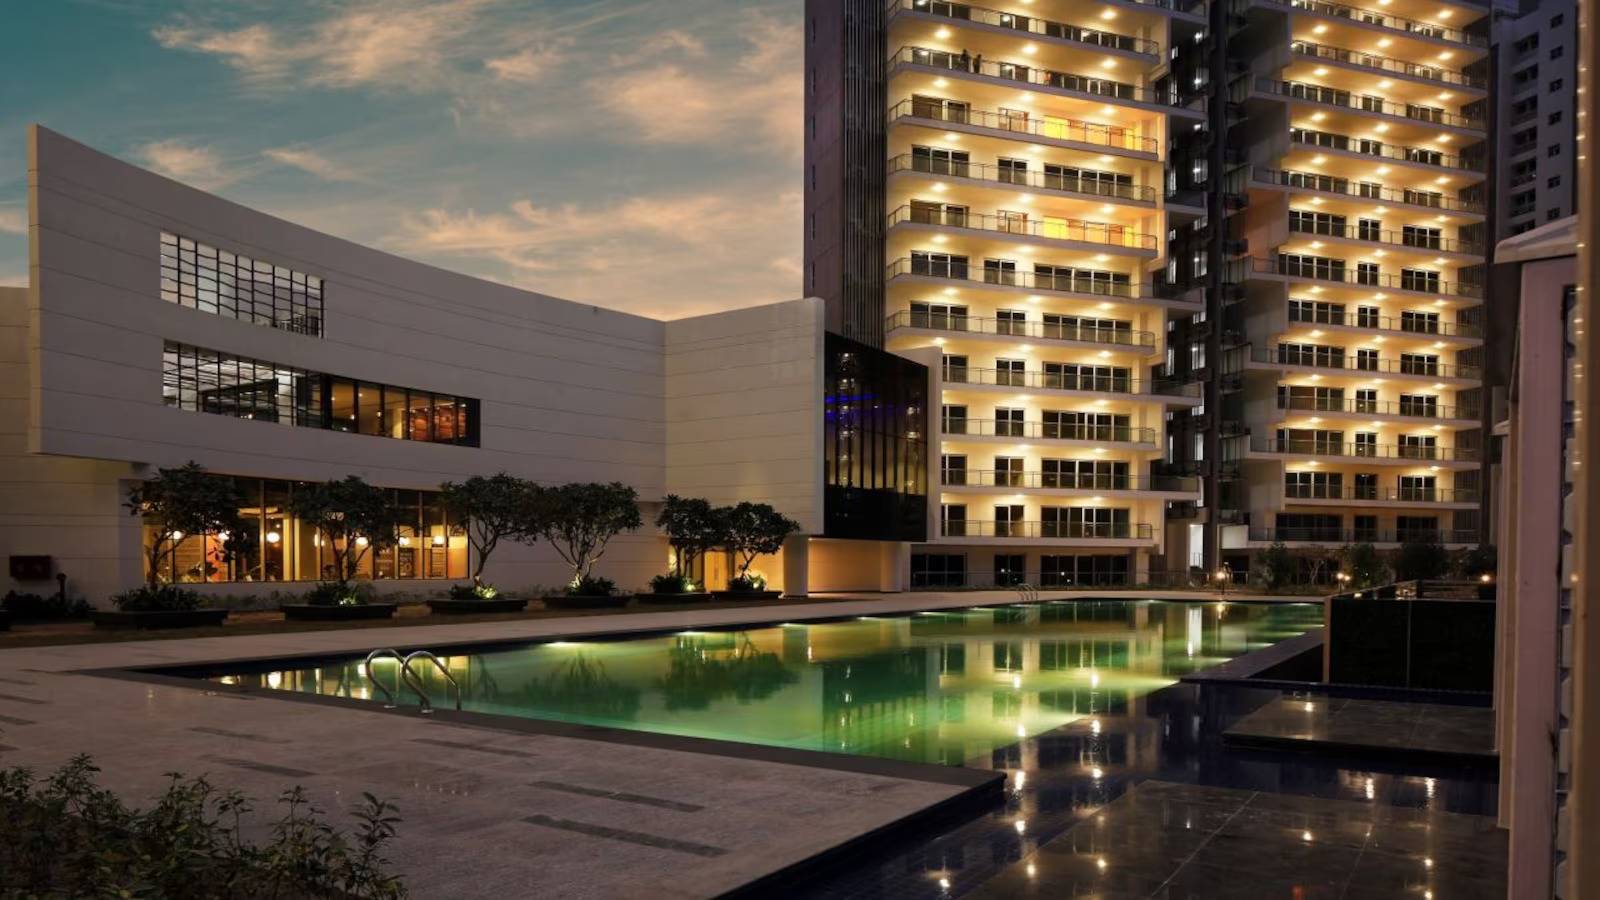 Luxury housing rentals rose between 5-28% in Delhi, Noida, Gurugram Savills India report